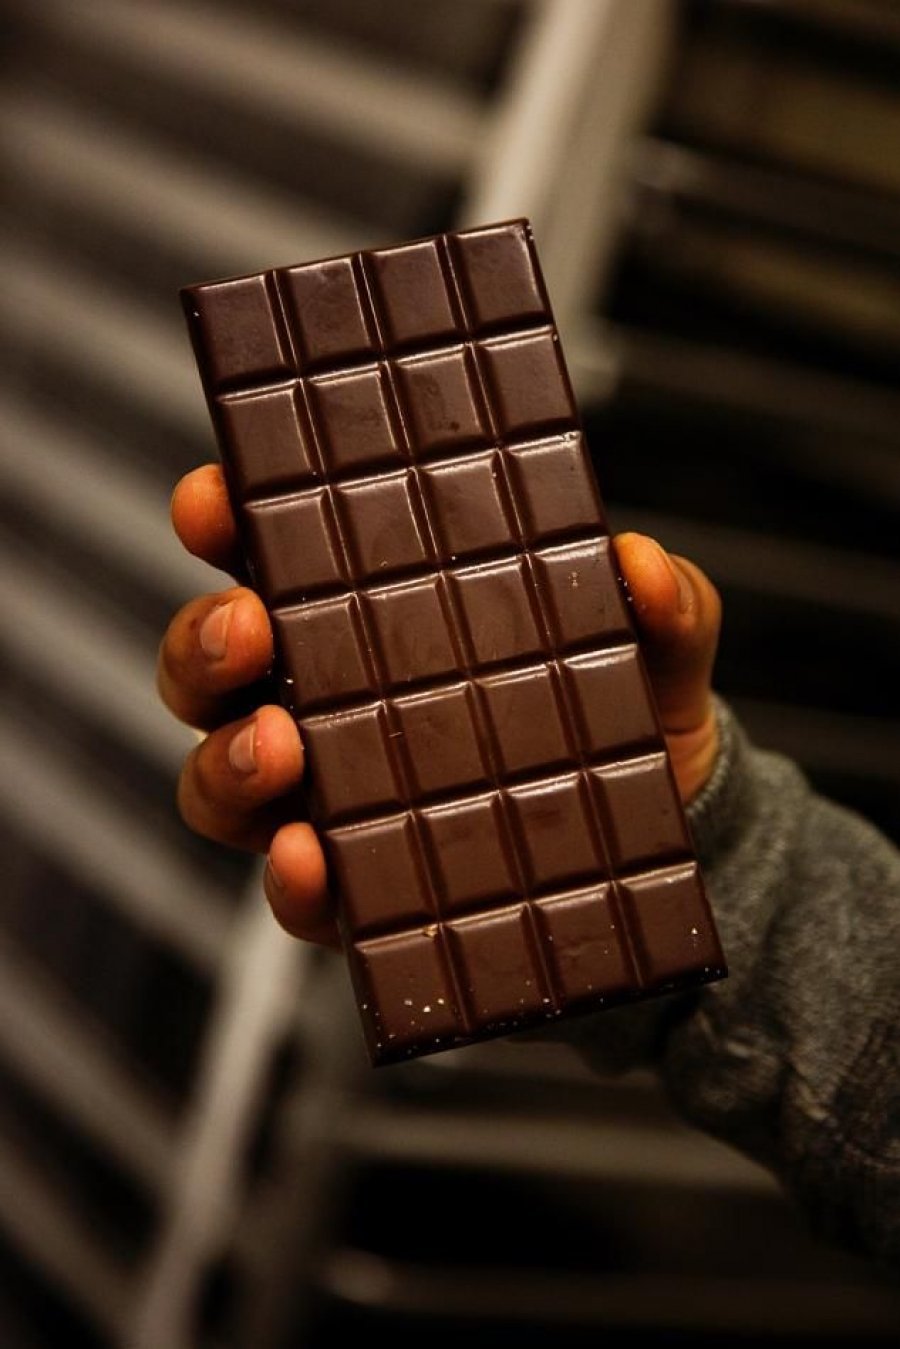 Покажи картинку шоколада. Шоколадка. Плитка шоколада. Плиточные шоколадки. Плиточка шоколада.